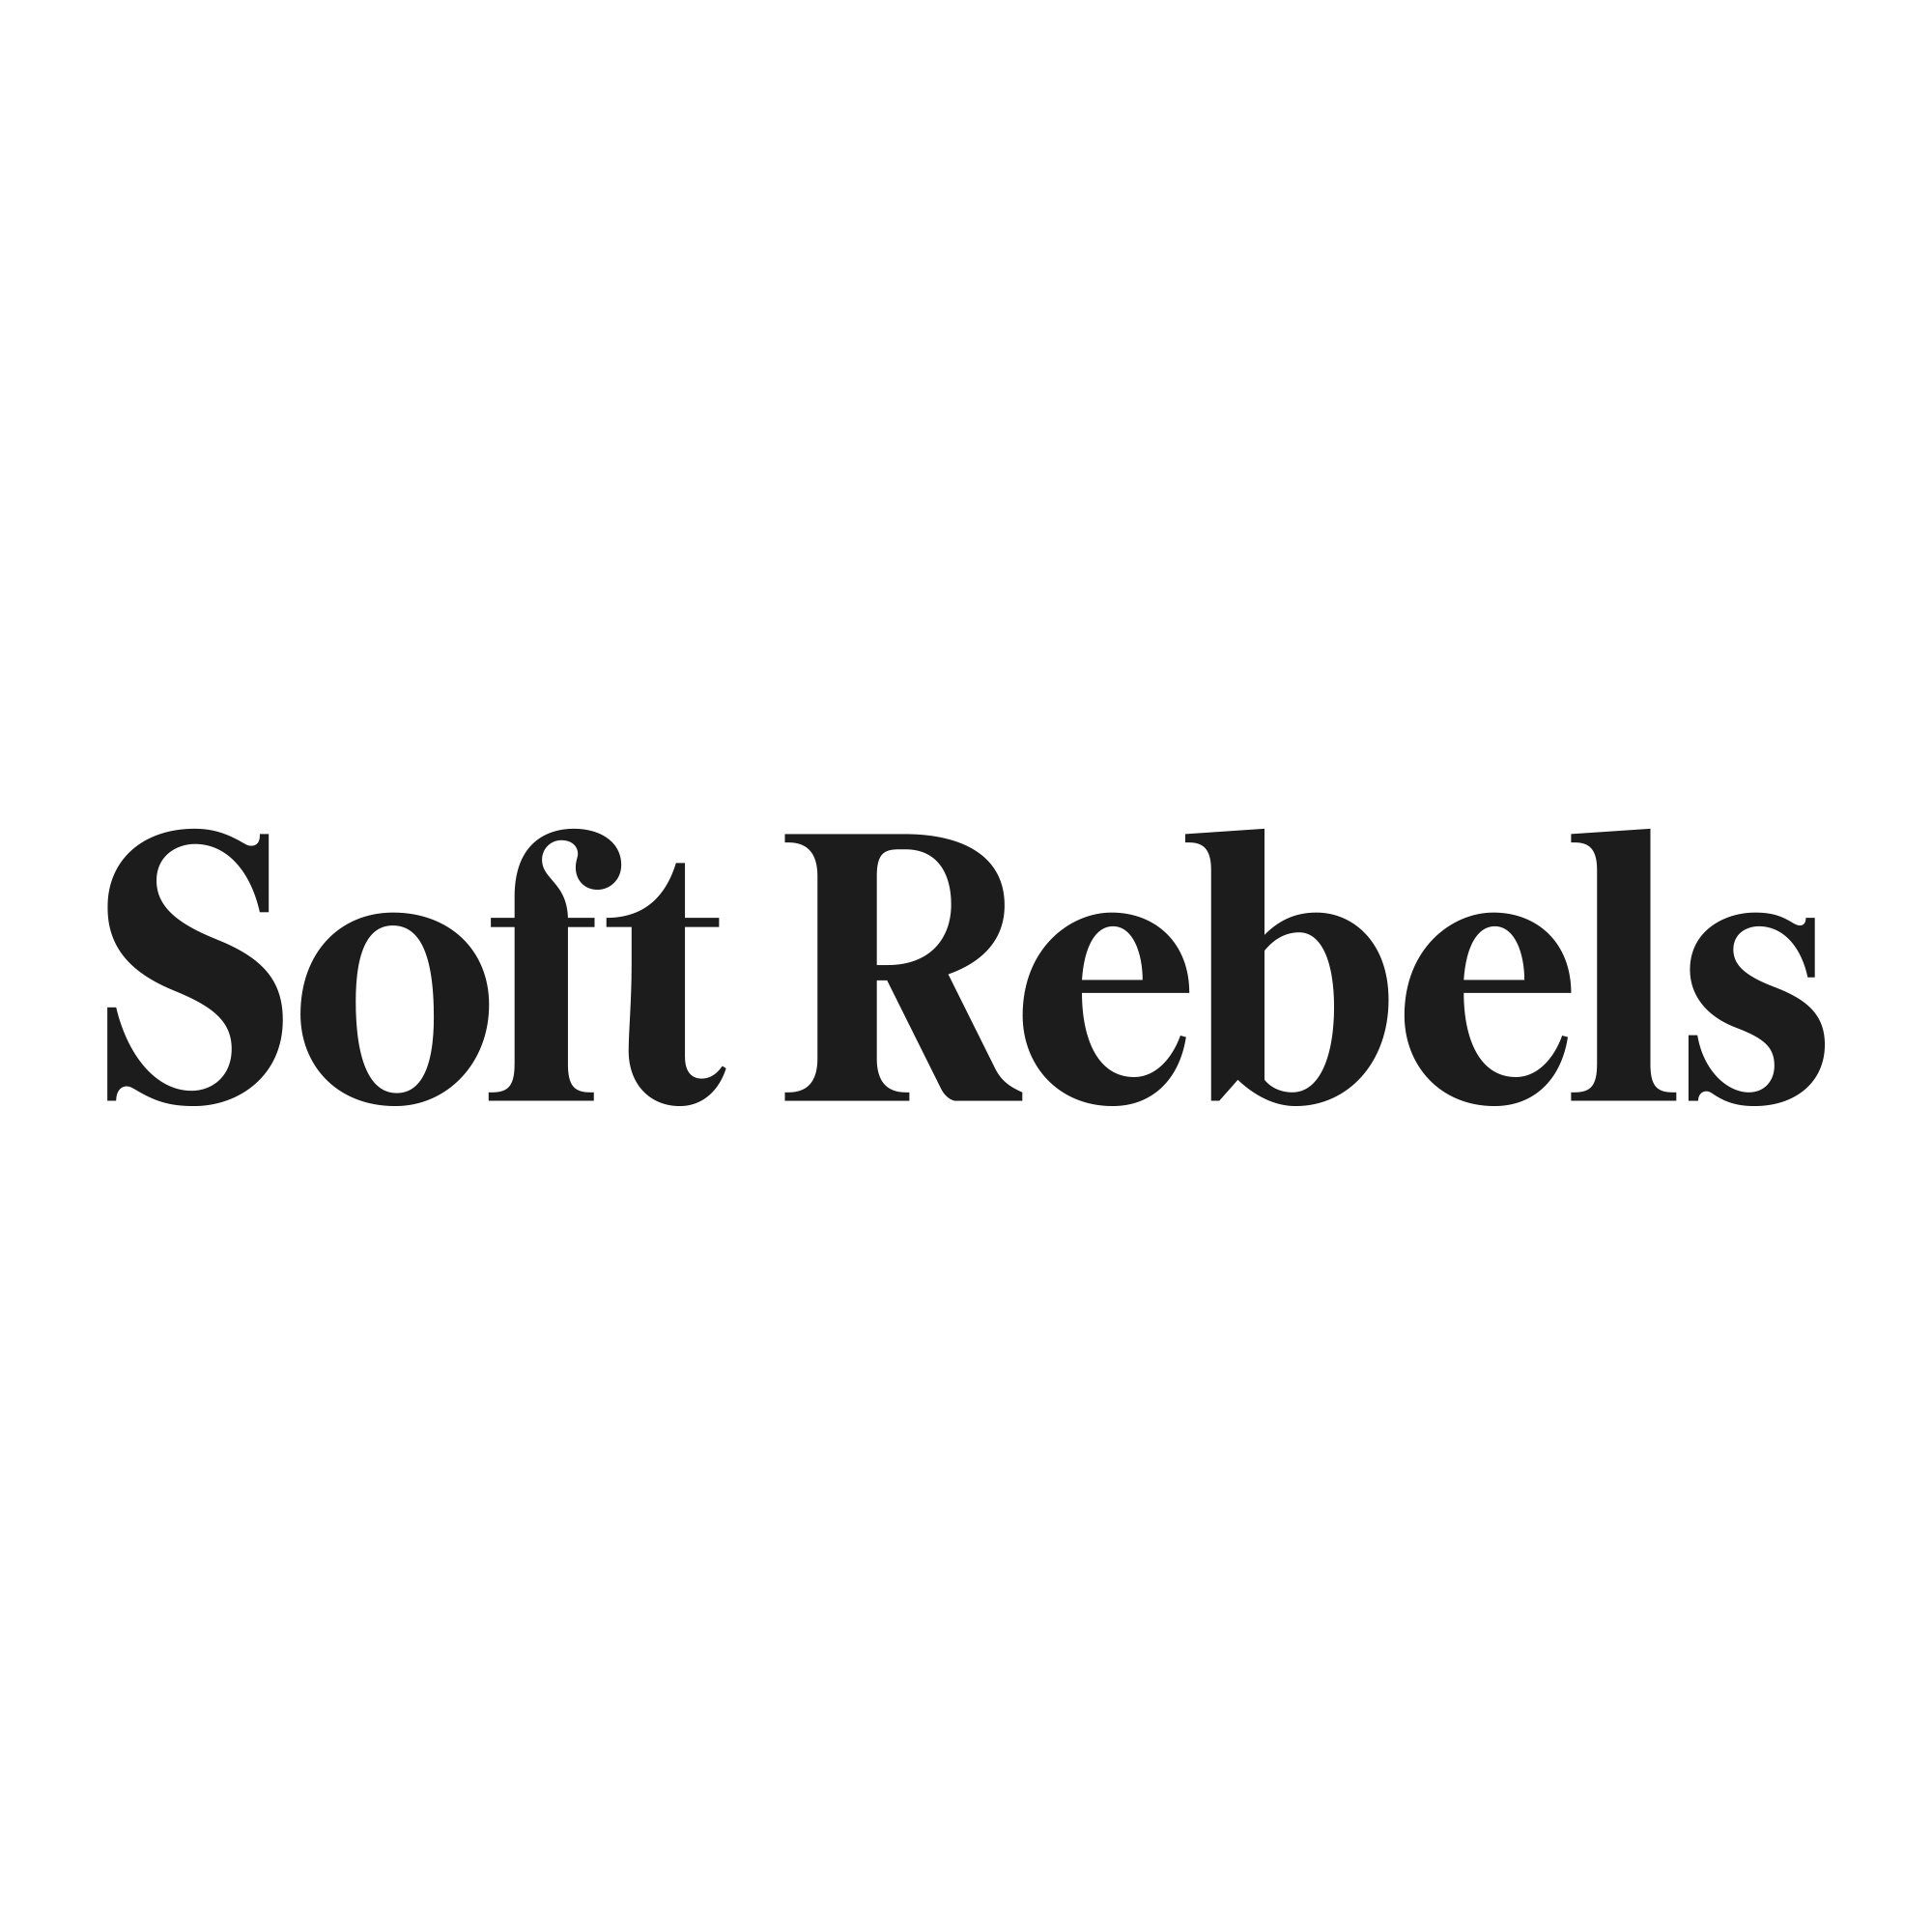 Soft Rebels